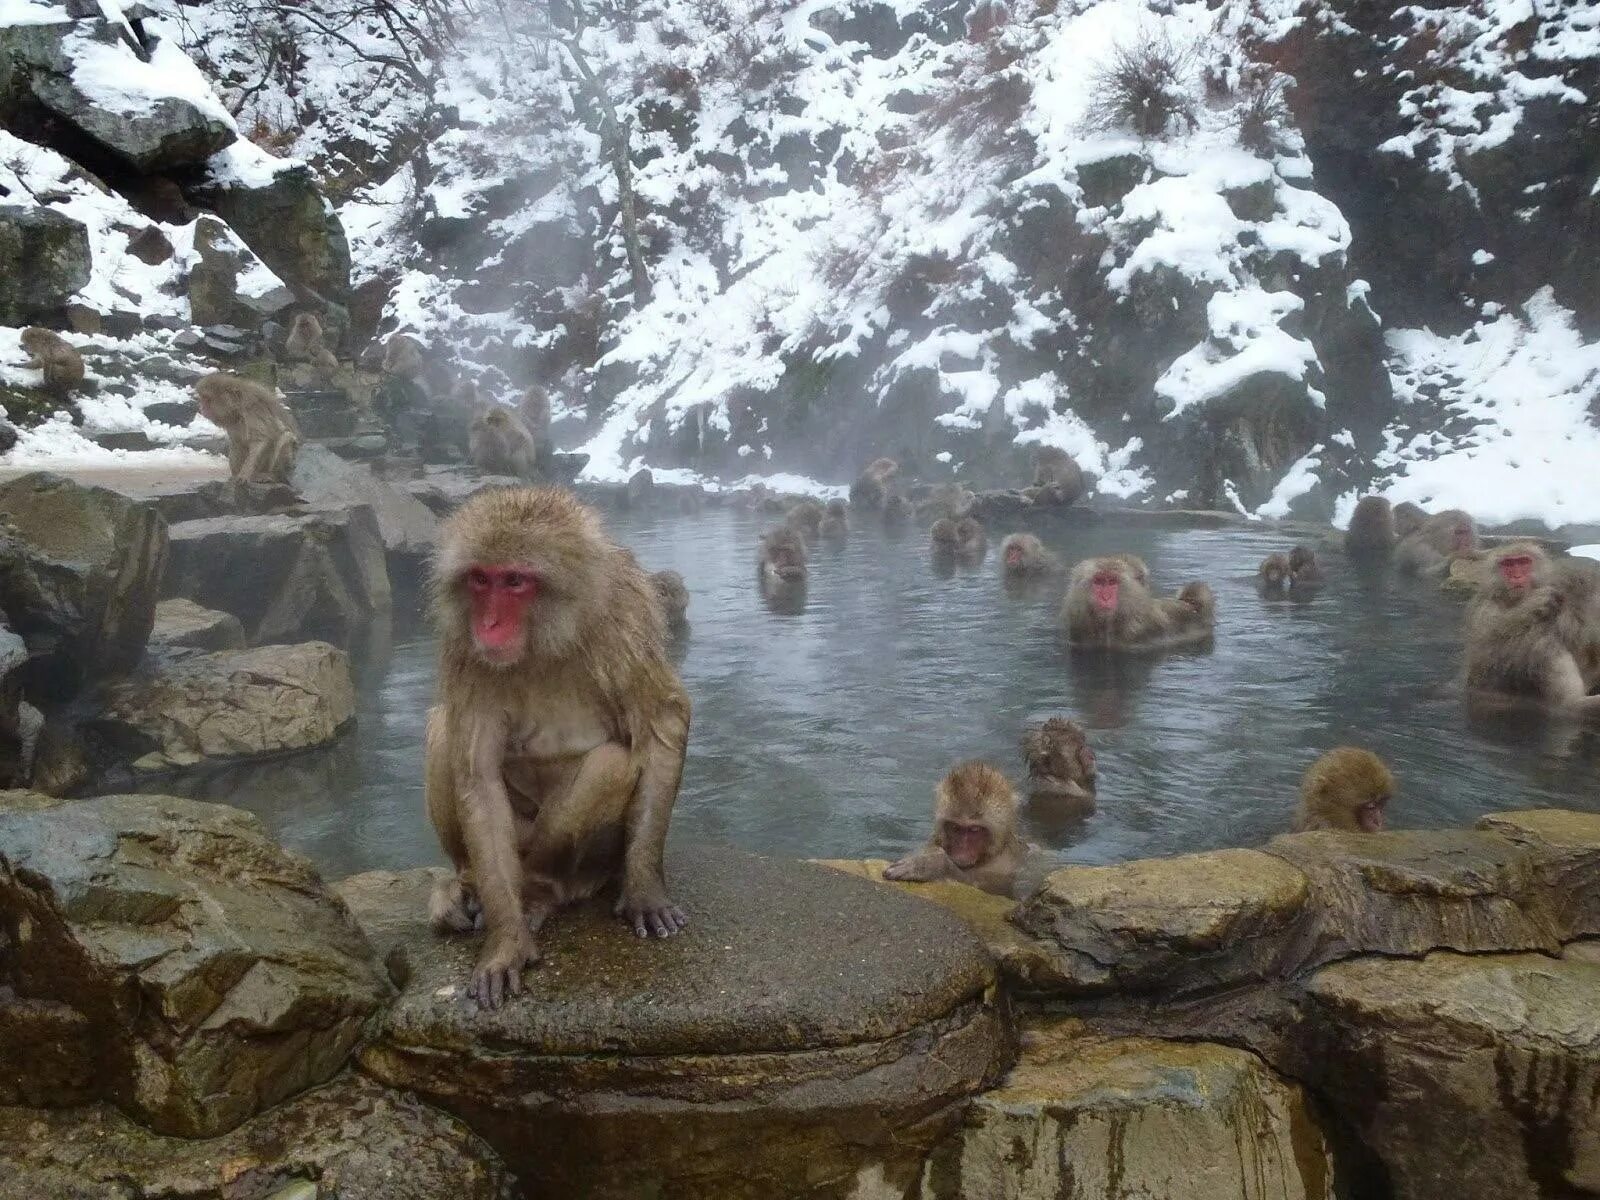 Парк Джигокудани. Парк обезьян Джигокудани парк. Парк снежных обезьян Дзигокудани. Обезьяний парк Дзигокудани, Япония. Обезьяна купается в теплой воде